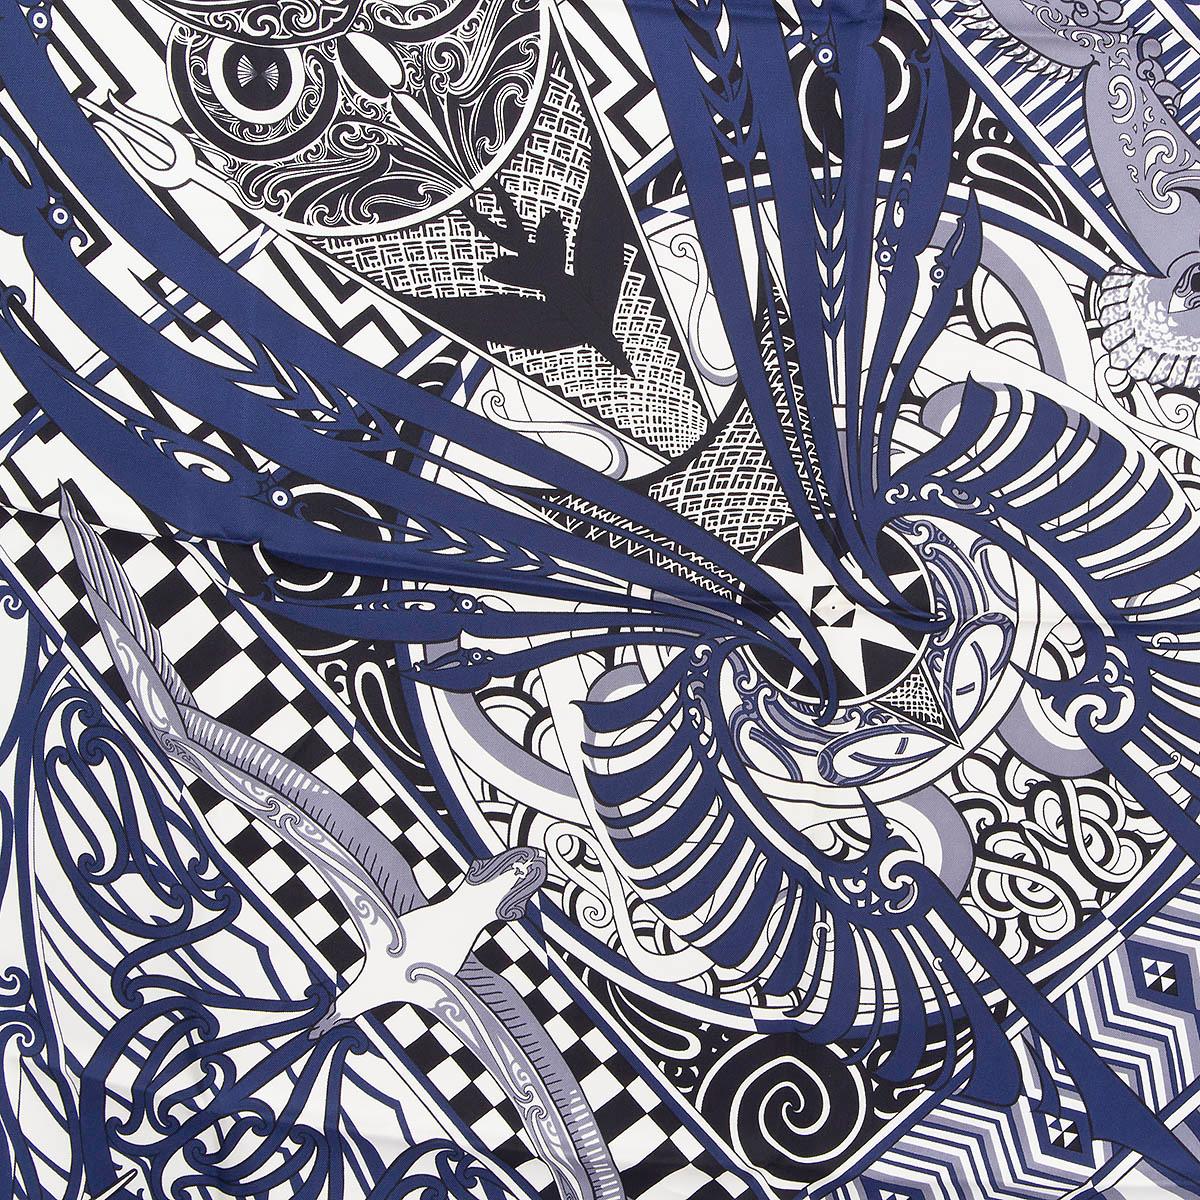 100% authentischer Hermès Kawa Ora 90 Schal von Te Rangitu Netana aus elfenbeinfarbenem Seiden-Twill (100%) mit marineblauen, schwarzen und grauen Details. Wurde getragen und ist in ausgezeichnetem Zustand.

Messungen
Breite	90cm (35.1in)
Länge	90cm